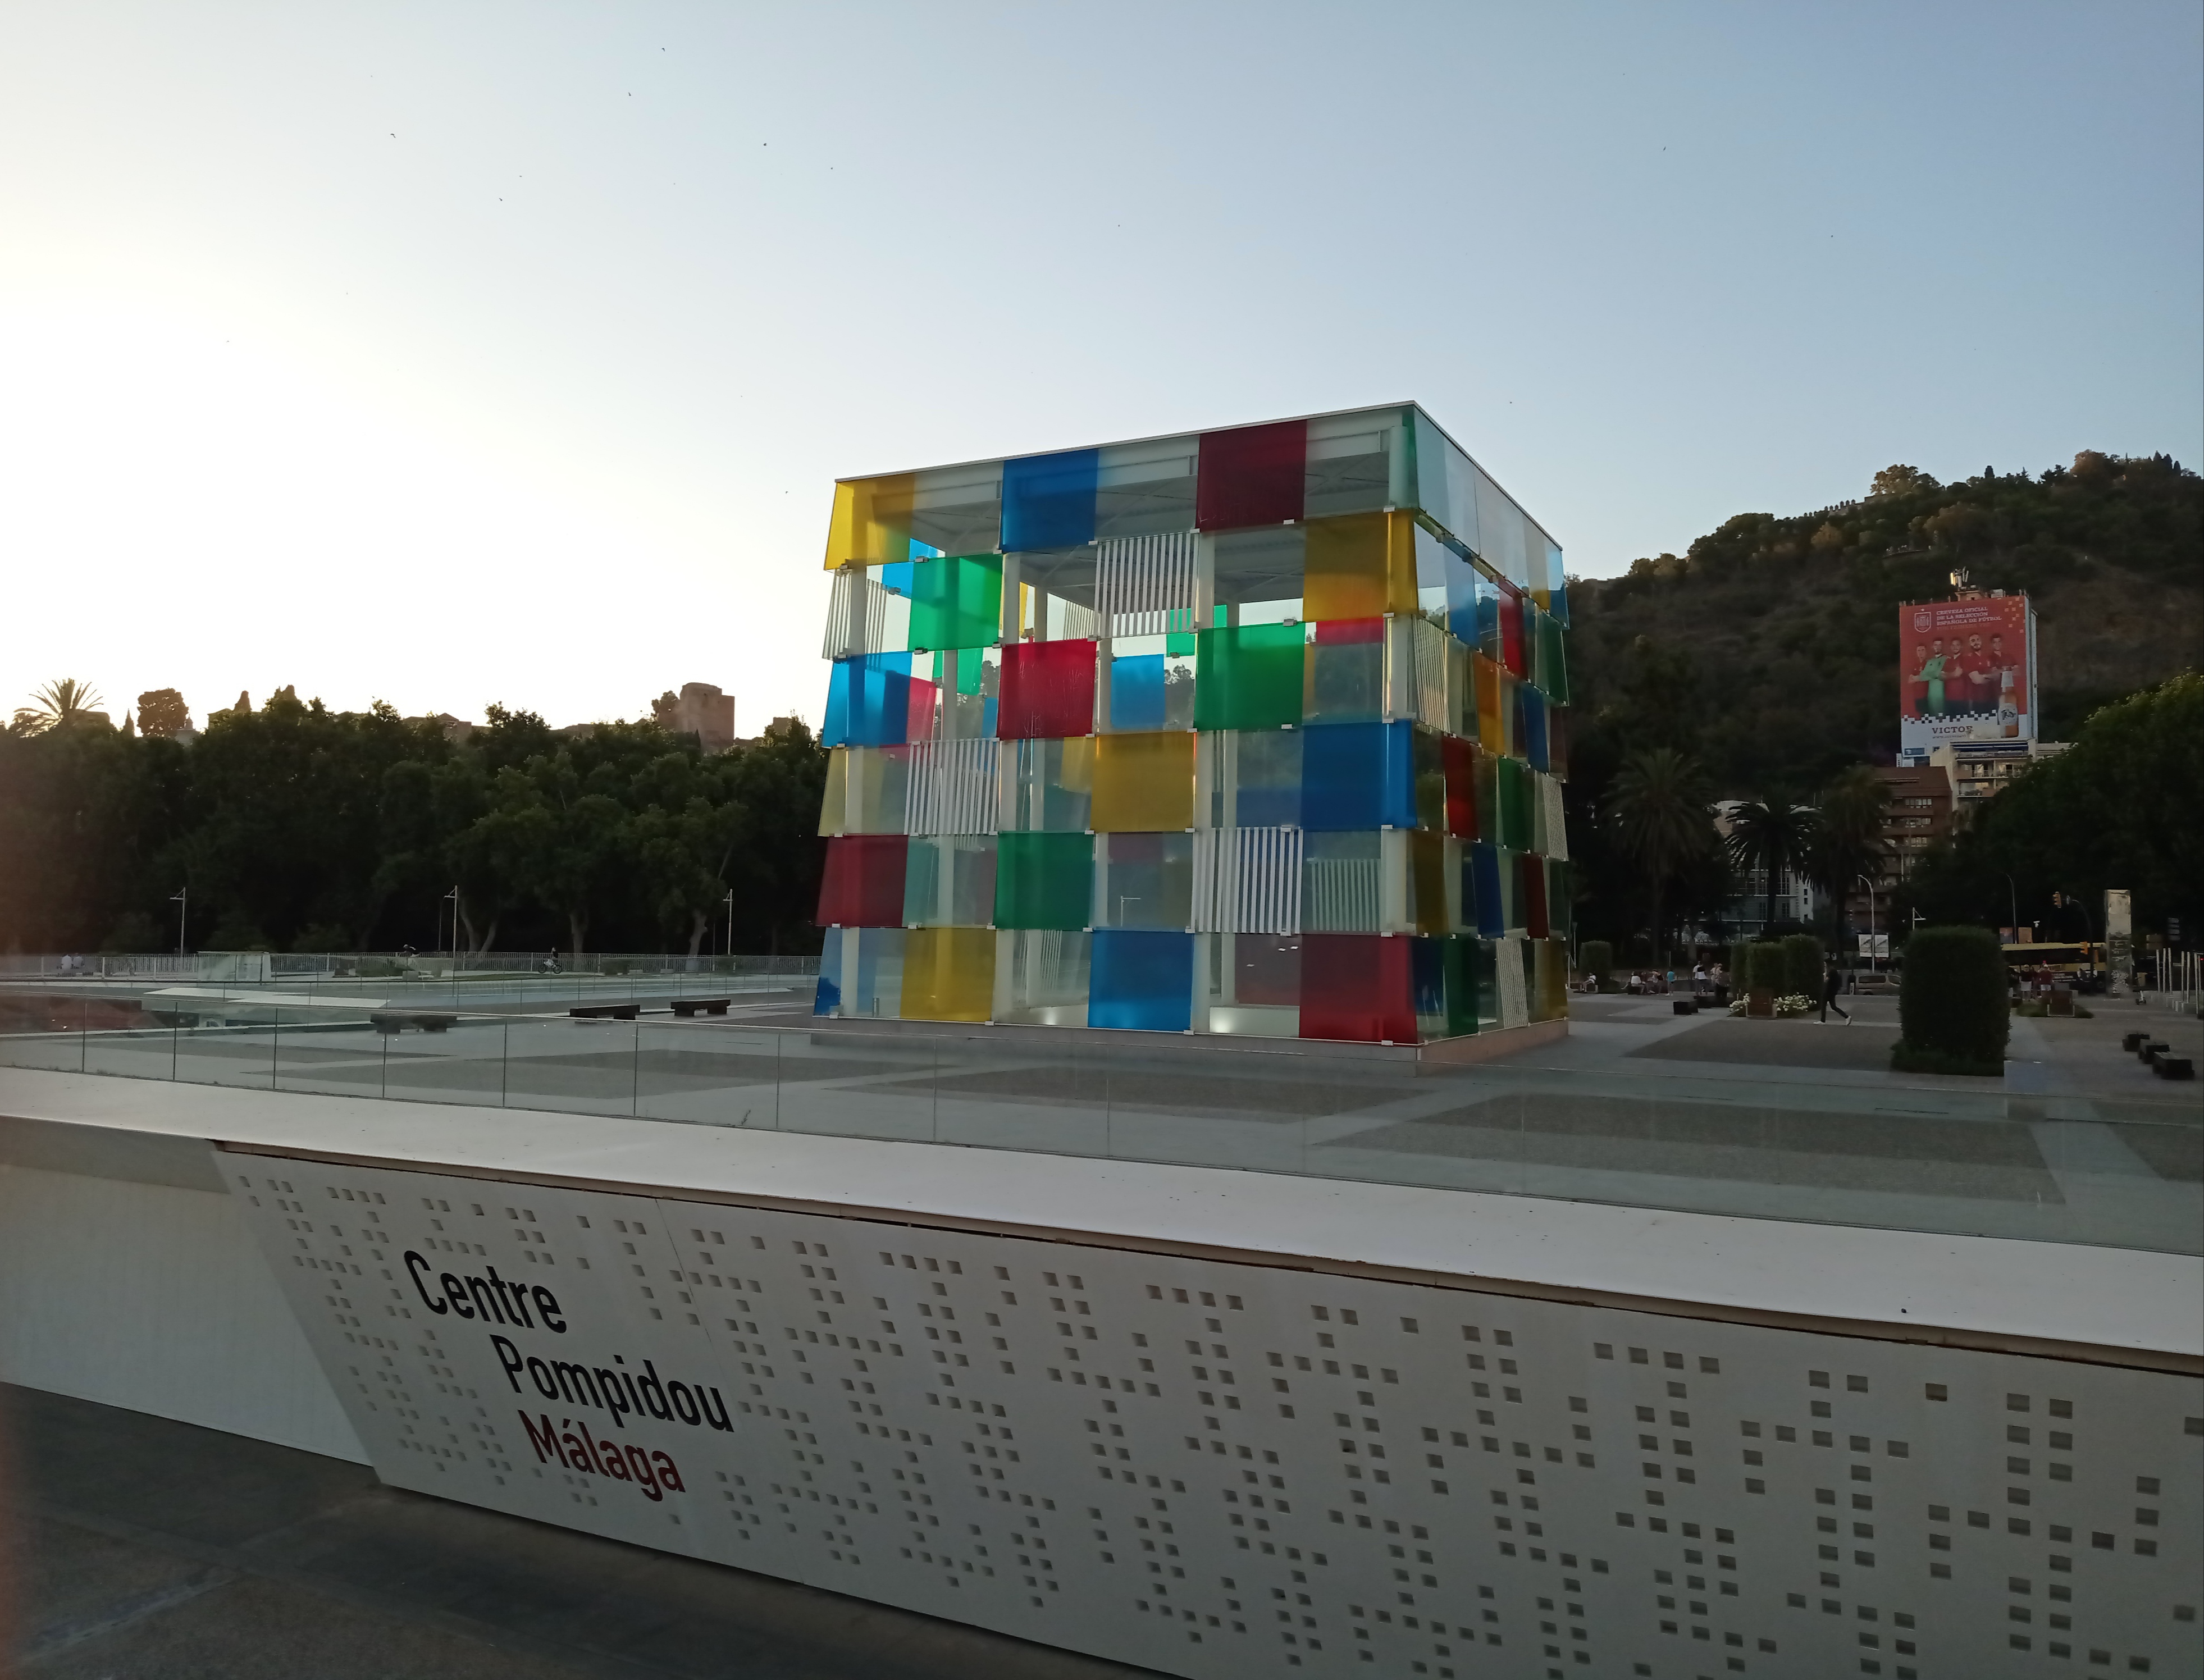 Centrul Pompidou Malaga